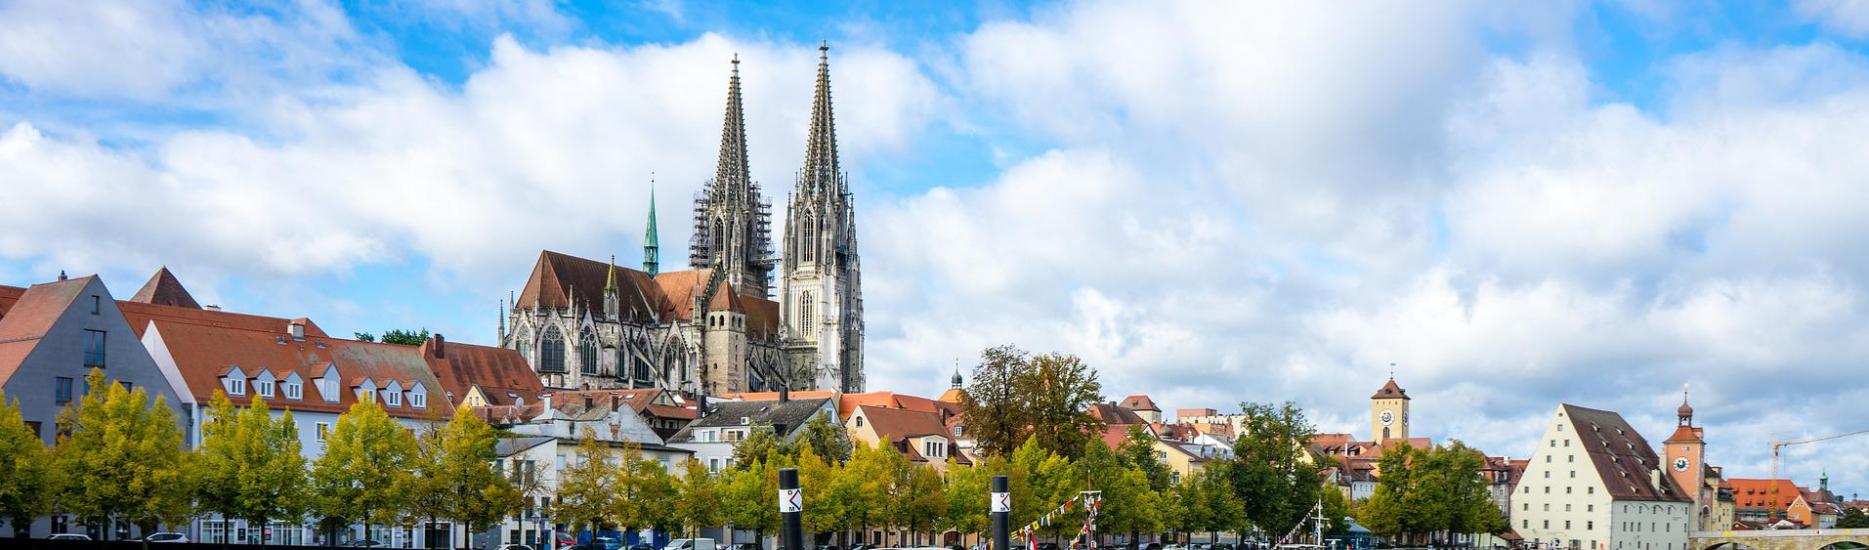 Regensburg, Deutschland